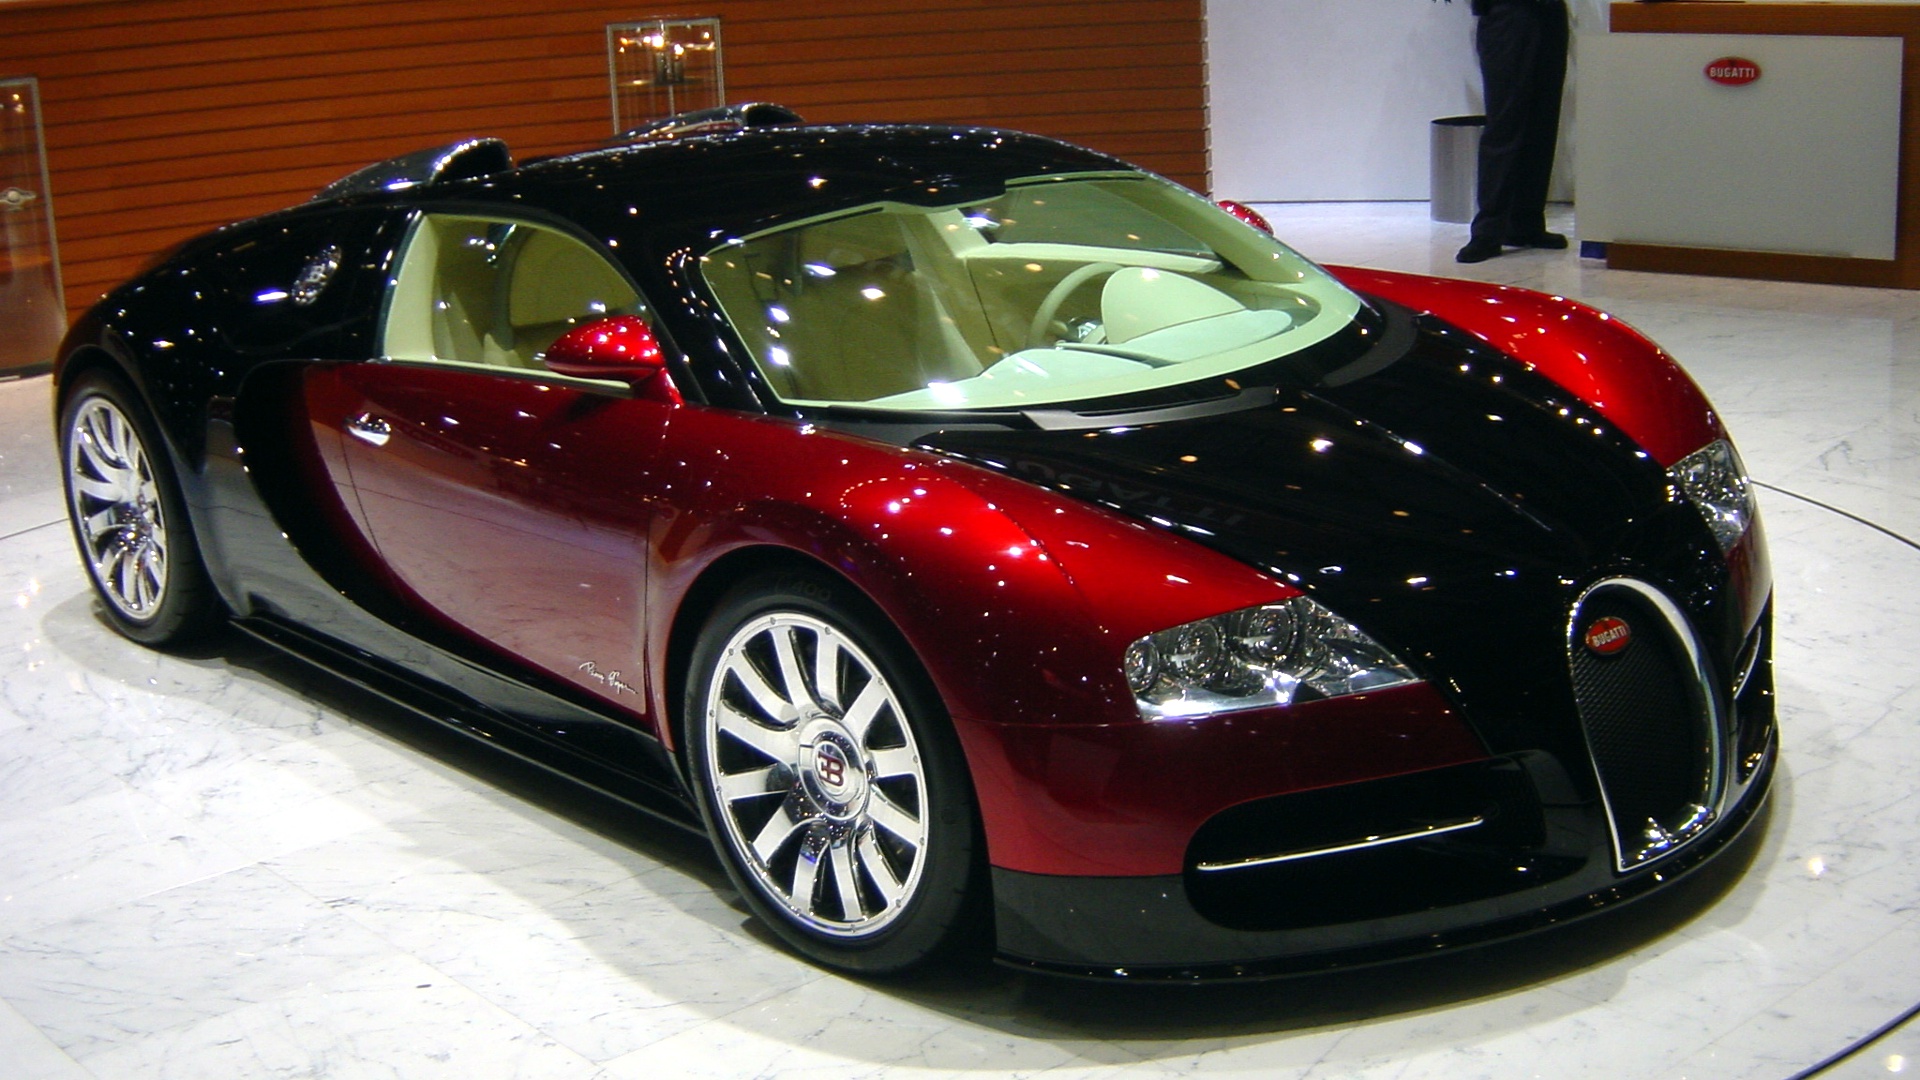 Bugatti #10